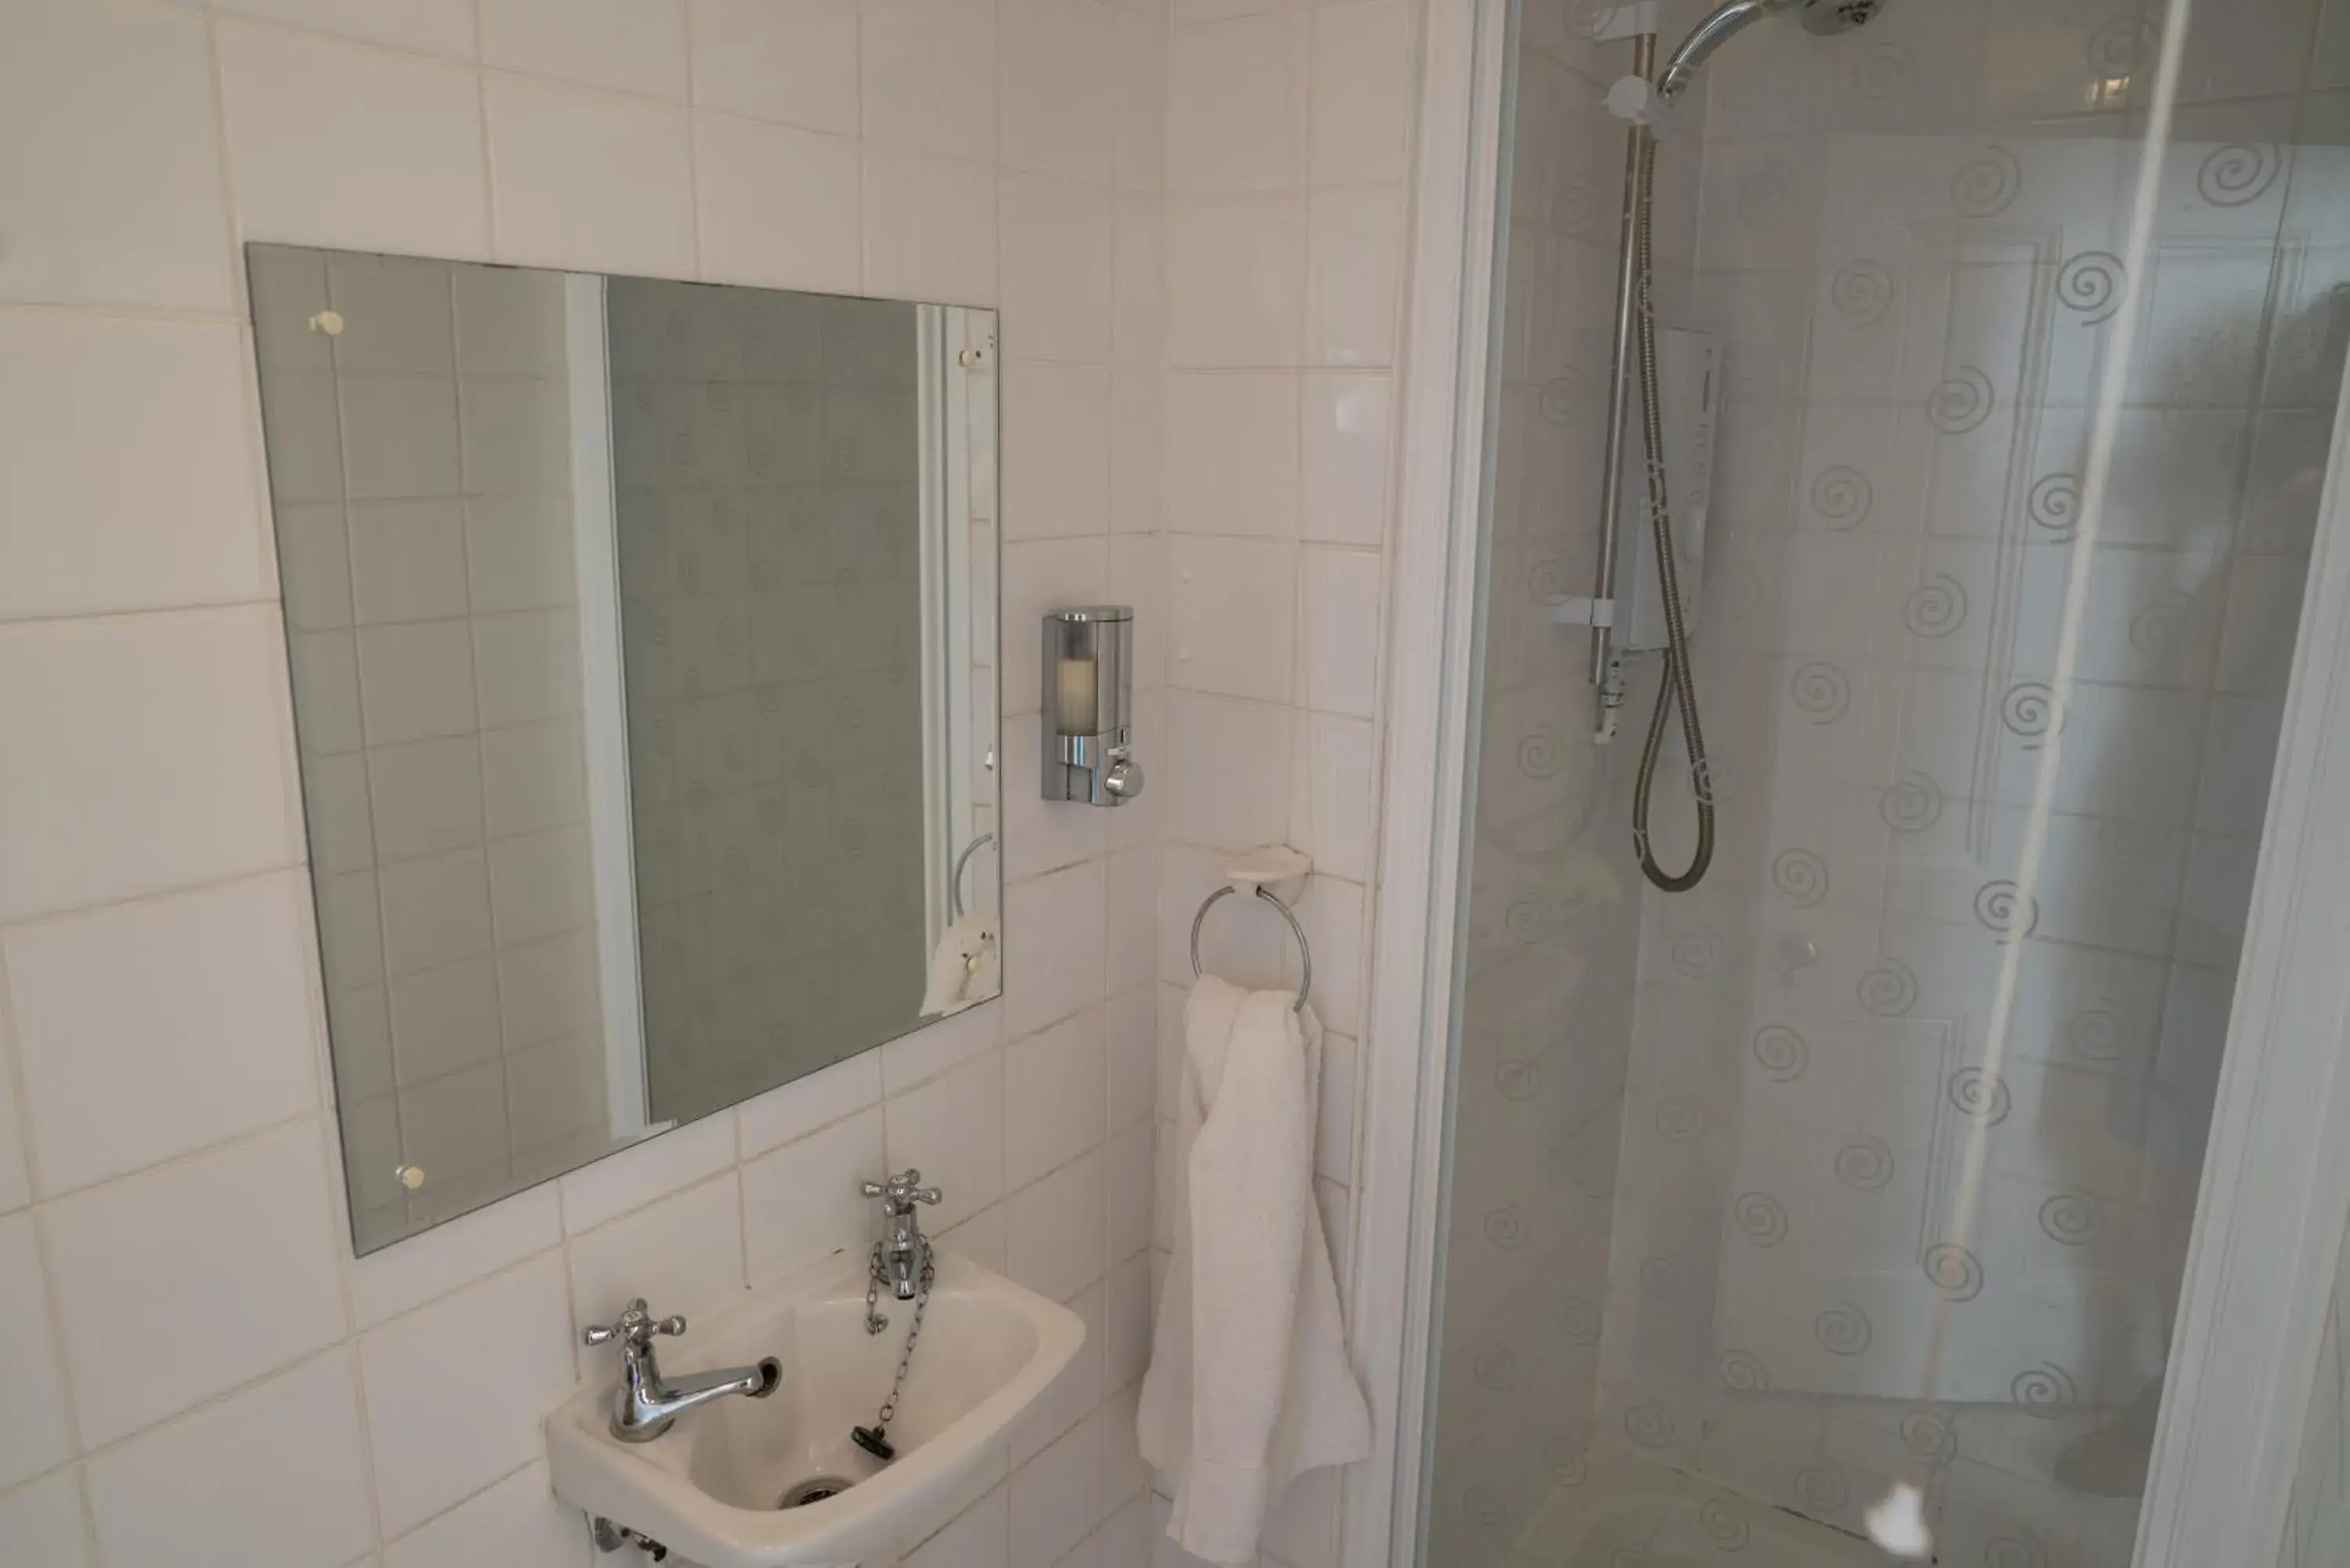 Bathroom in Llandudno Hostel